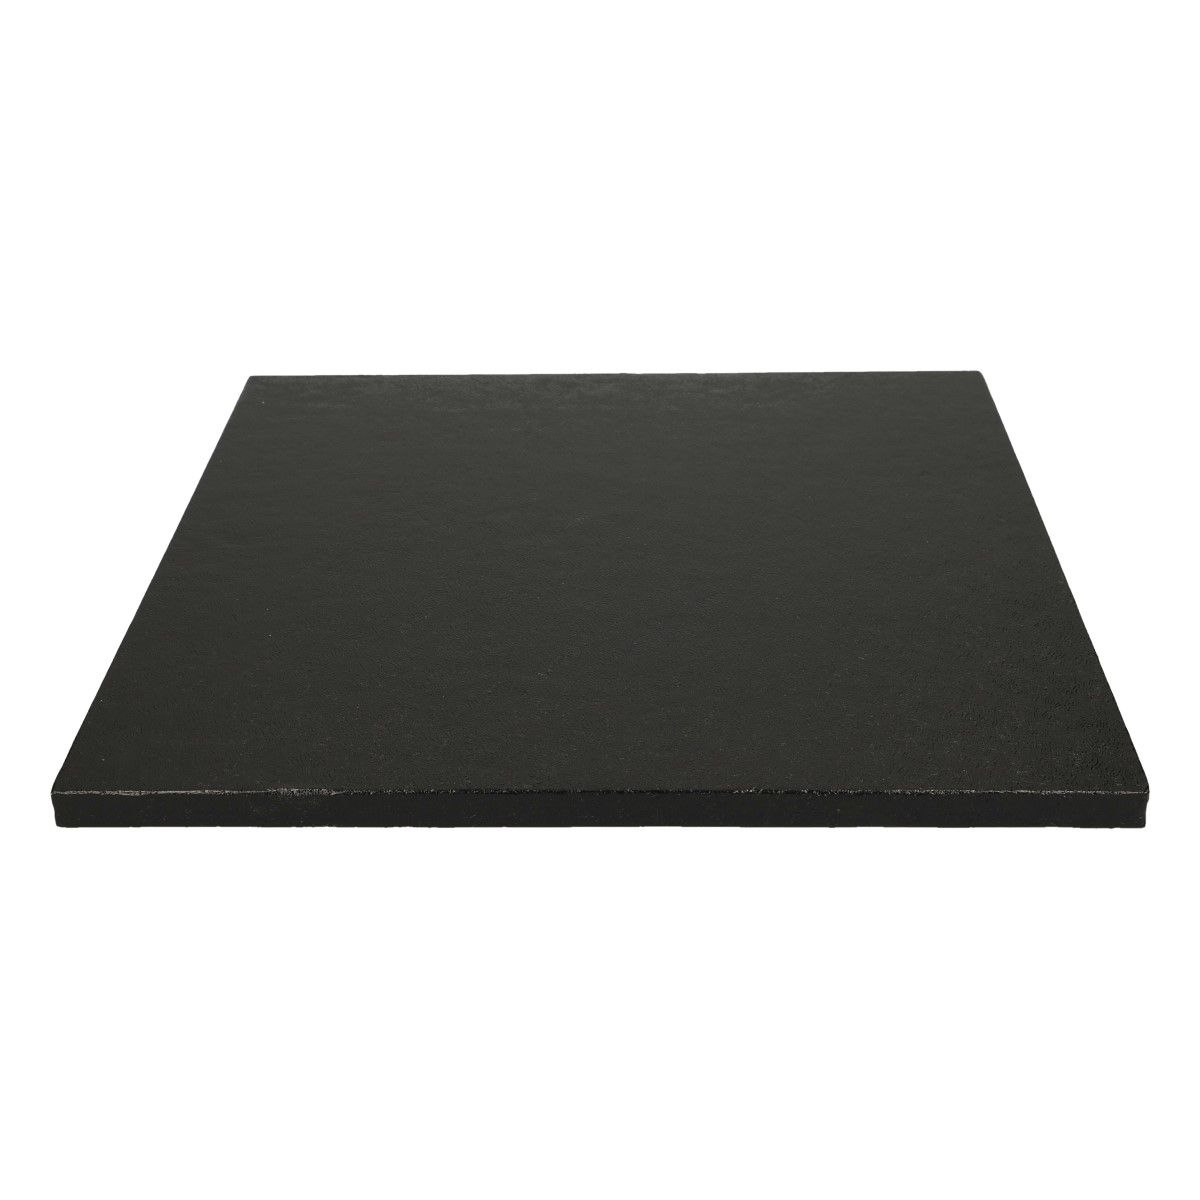 Tortenplatte quadratisch Schwarz 30cm - 1 Stück 